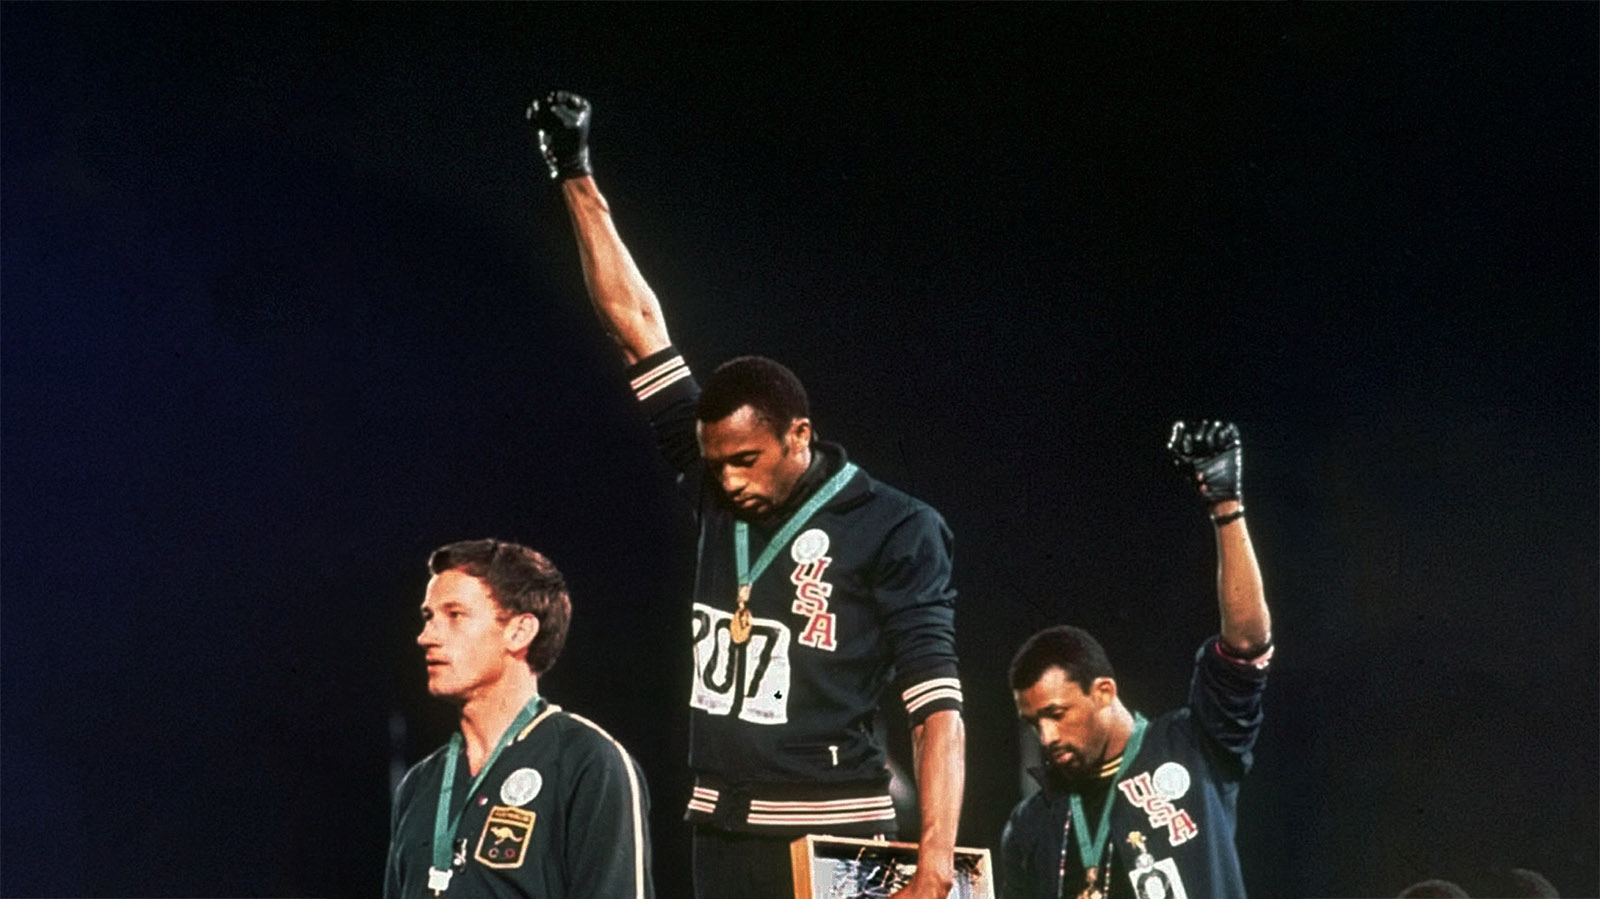 הצדעת הכוח השחור באולימפיאדת מקסיקו 1968 &#8211; ג'ון קרלוס (מימין) טומי סמית' ופיטר נורמן בטקס הענק המדליות בריצת 200 מטר (צילום: AP)